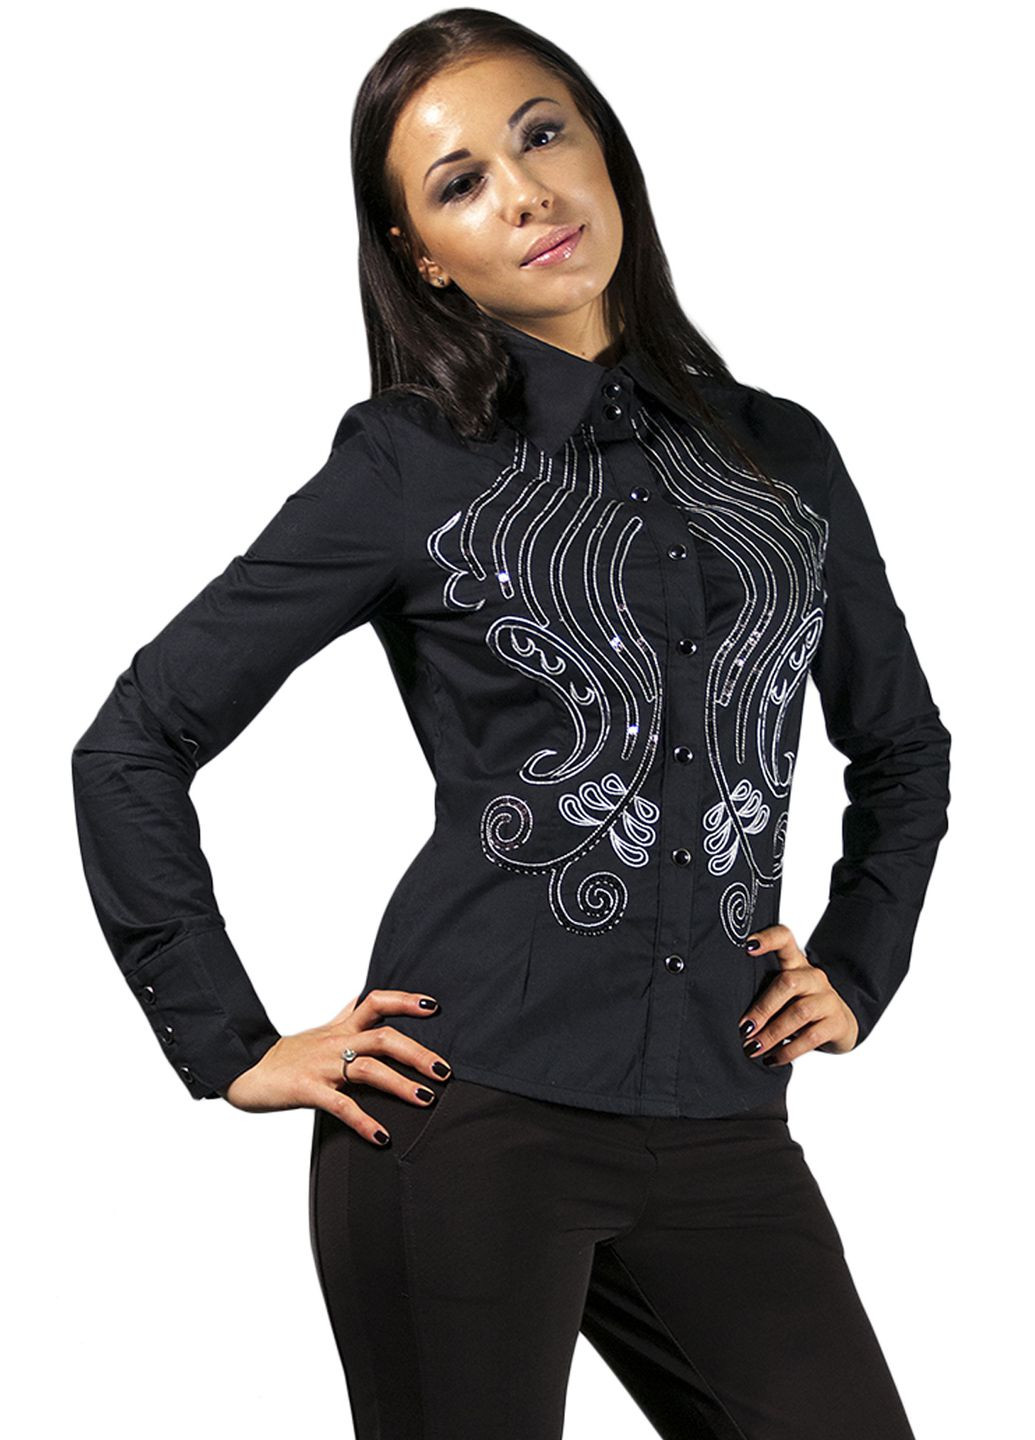 Чёрная женская черная блуза с орнаментом we-01213 черный Forza Viva